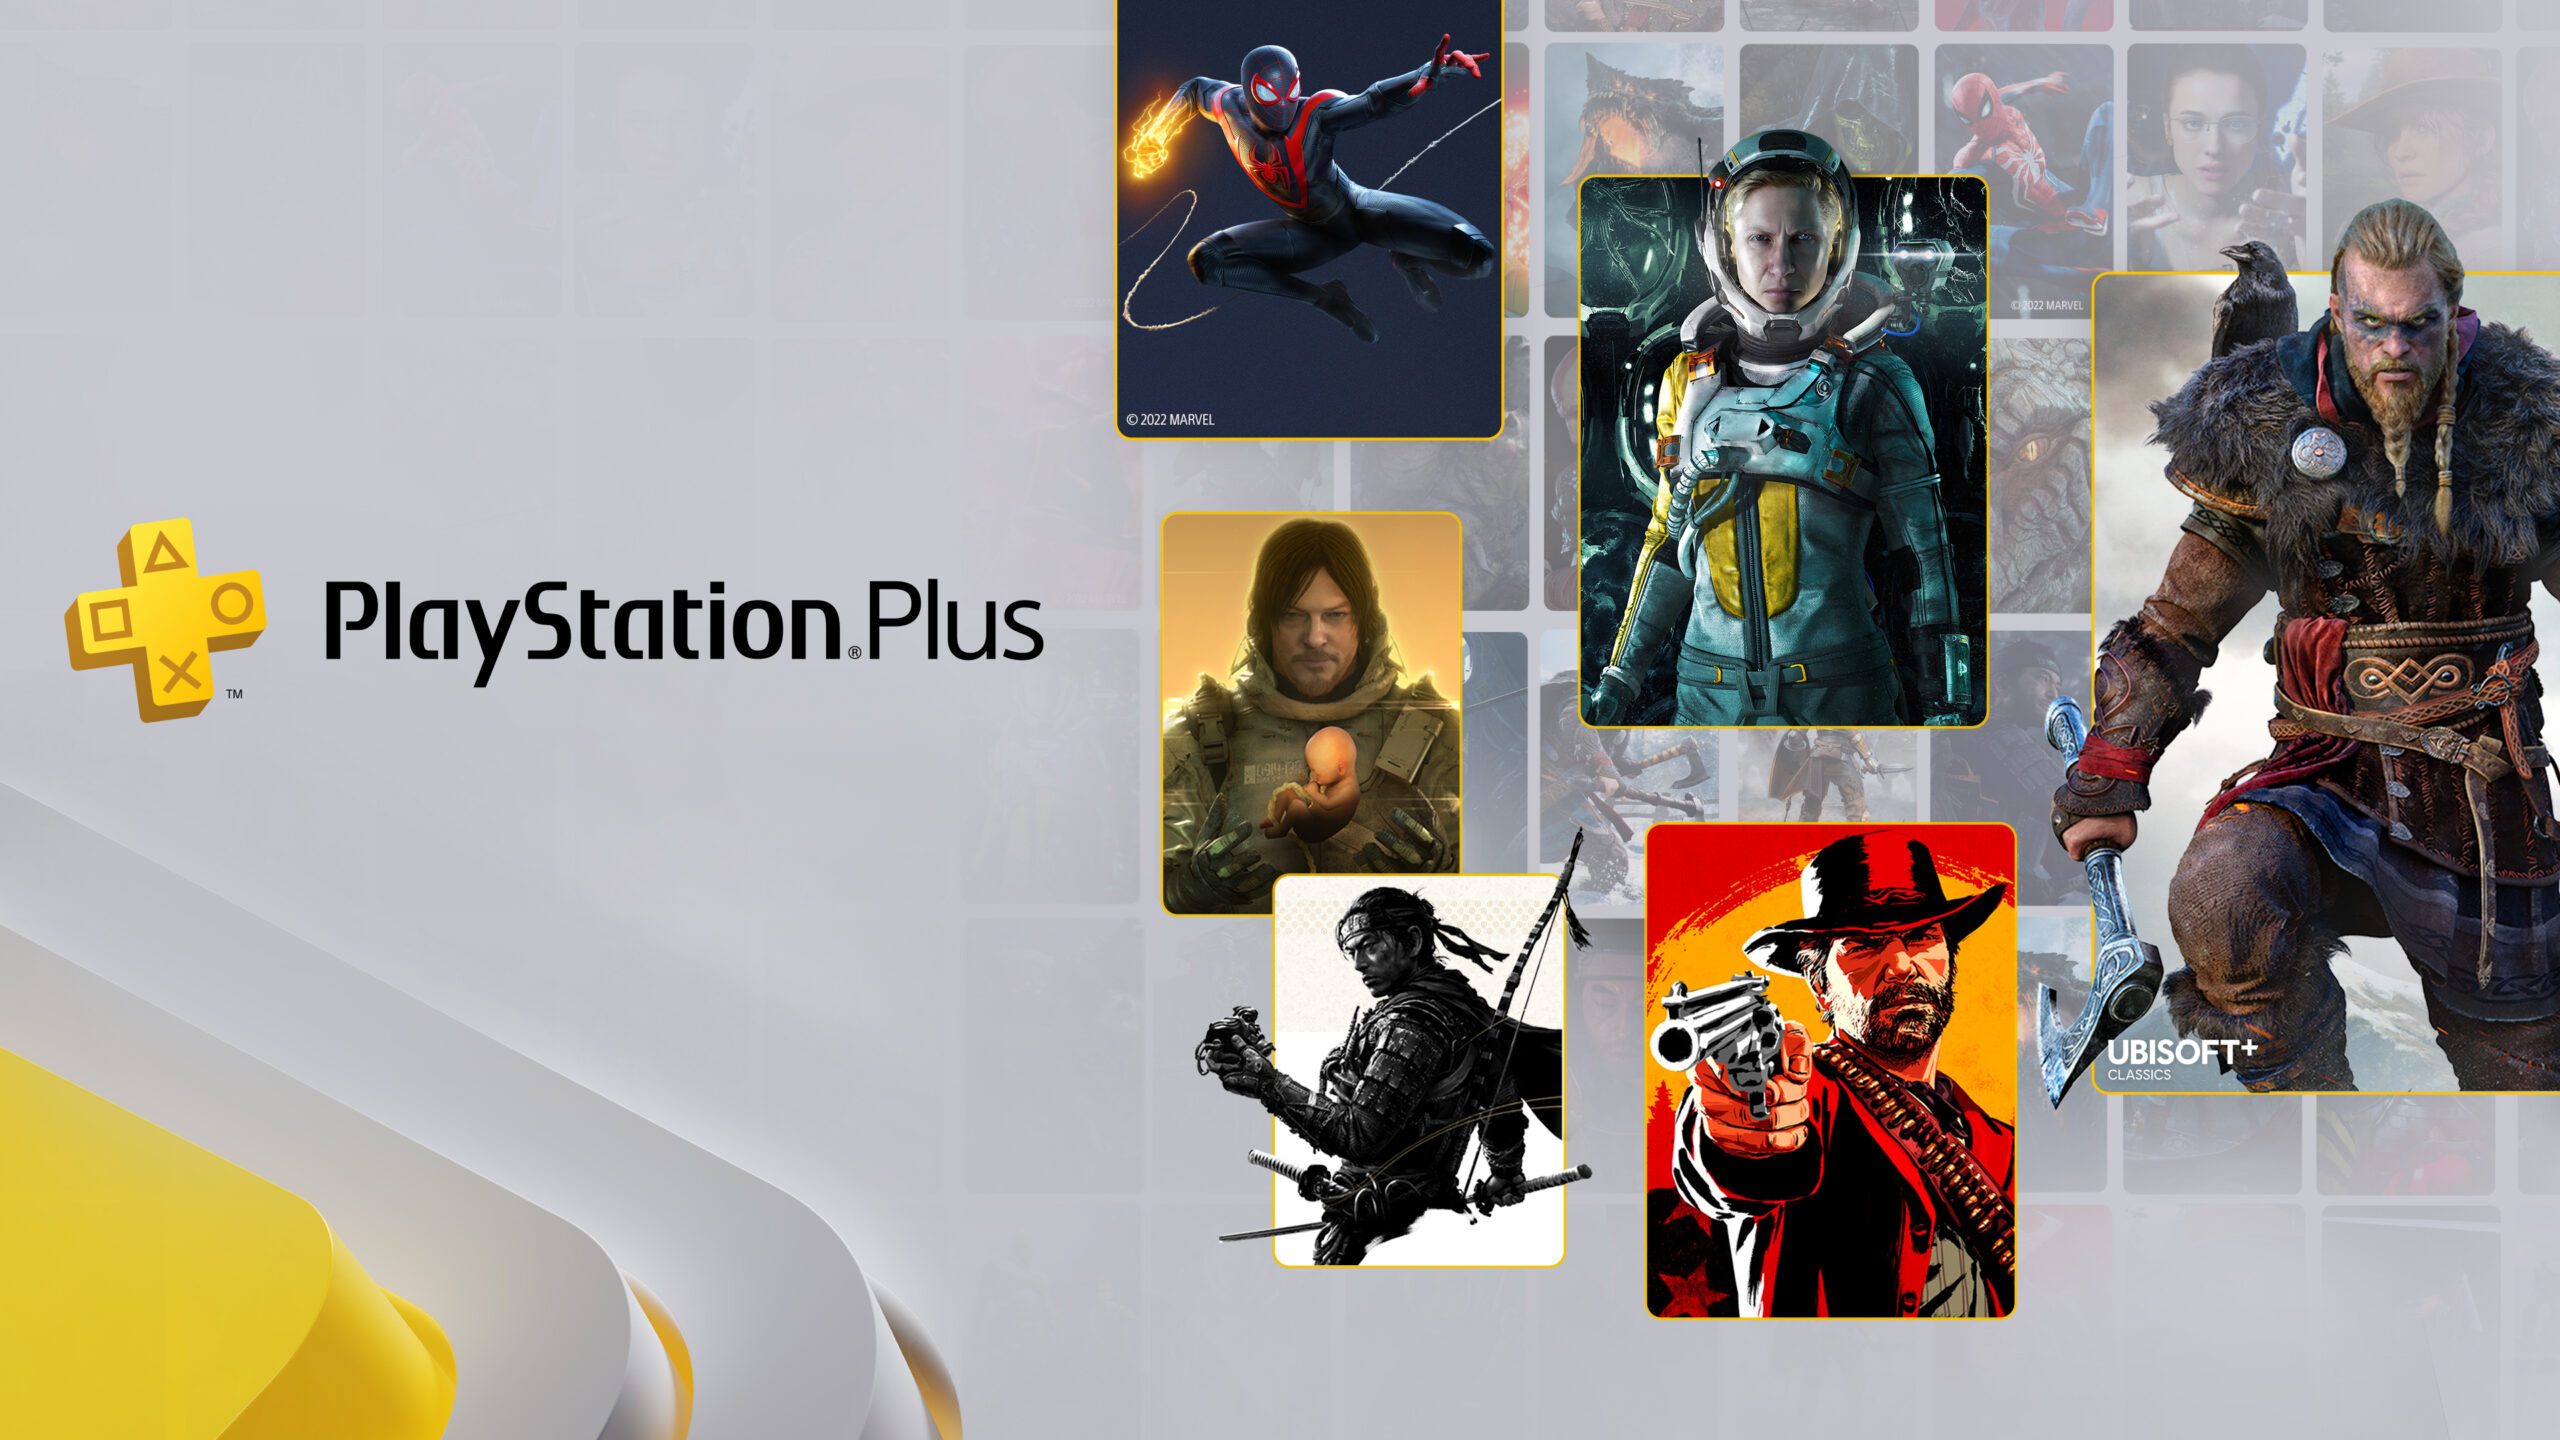 Programação de jogos no novíssimo PlayStation Plus: Assassin's Creed  Valhalla, Demon's Souls, Ghost of Tsushima Versão do Diretor, NBA 2K22 e  muito mais incluso no serviço. – PlayStation.Blog BR